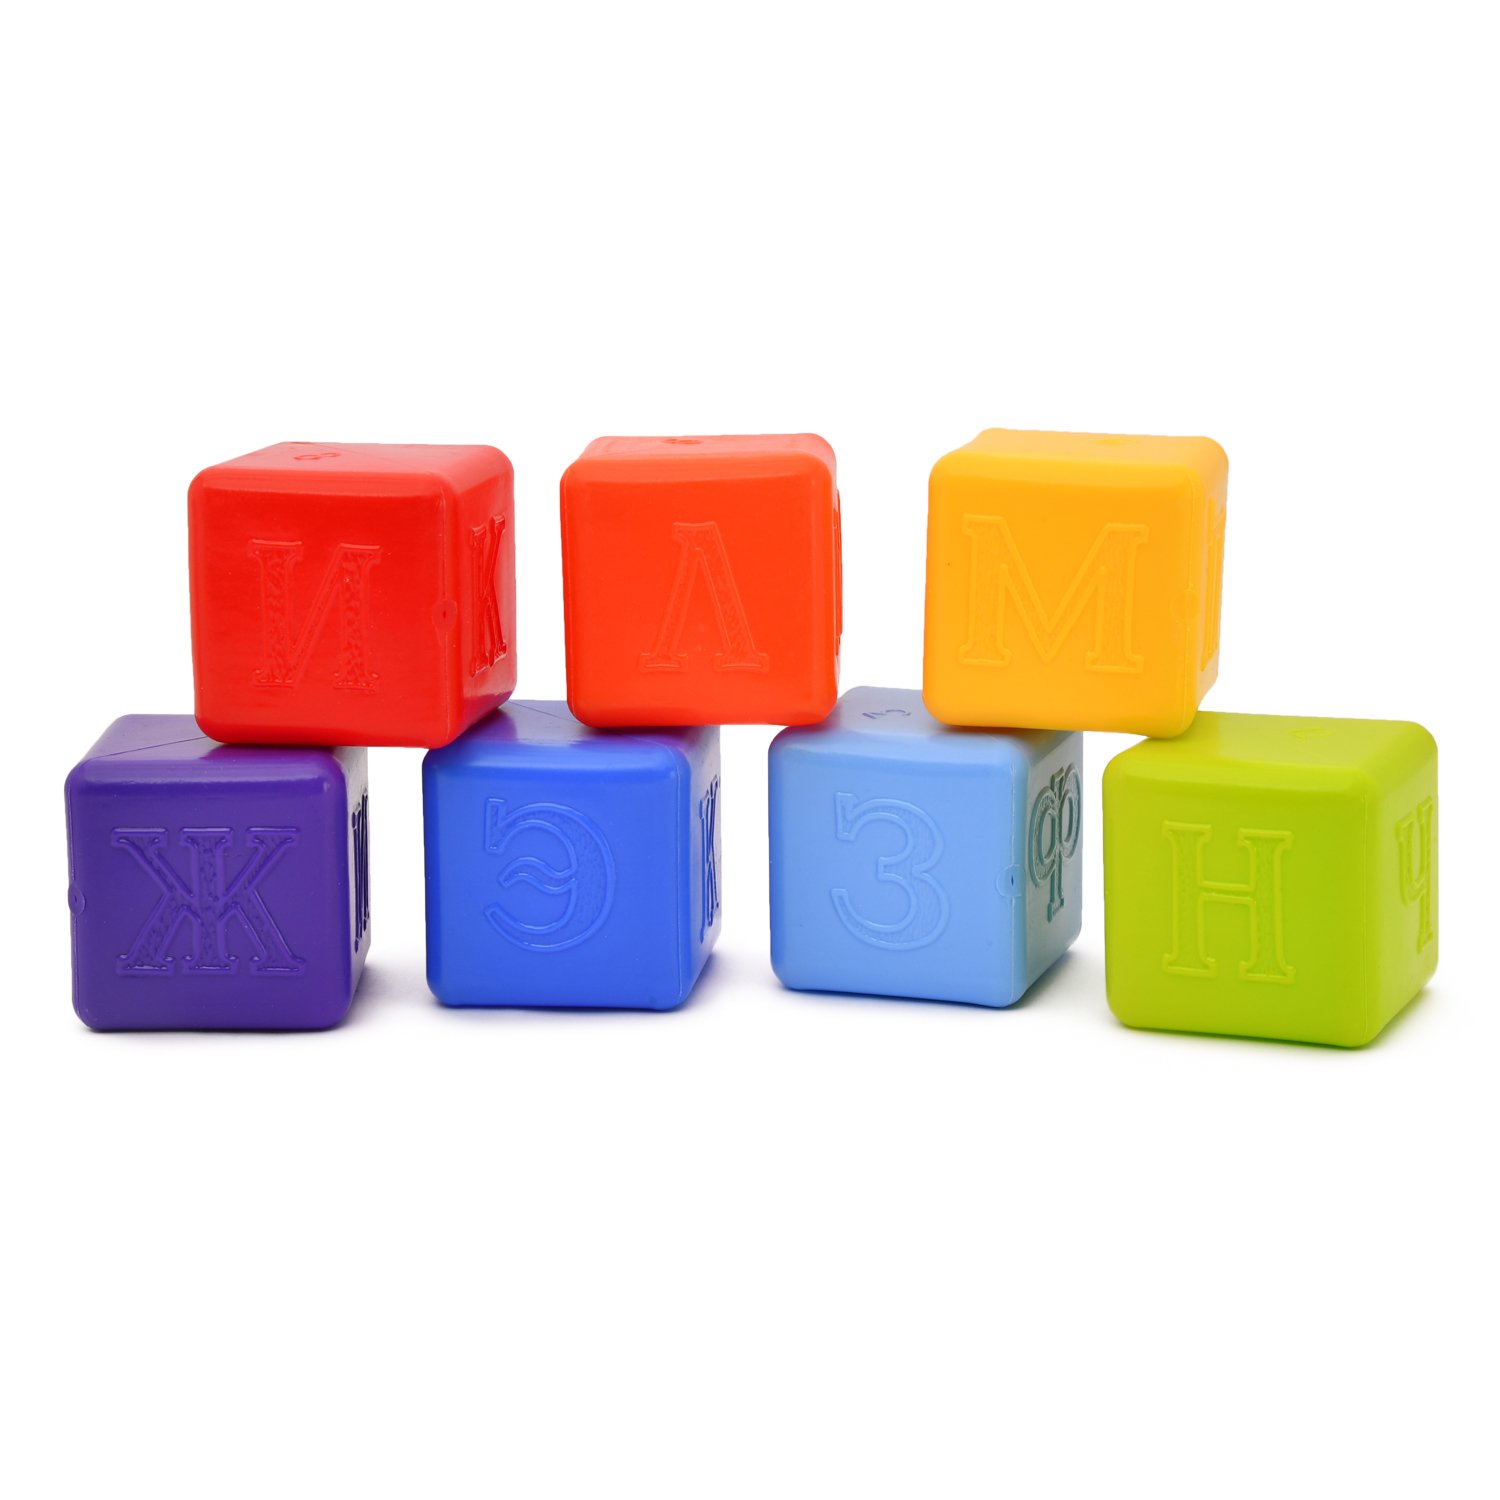 Кубики Росигрушка кирпичики 5003